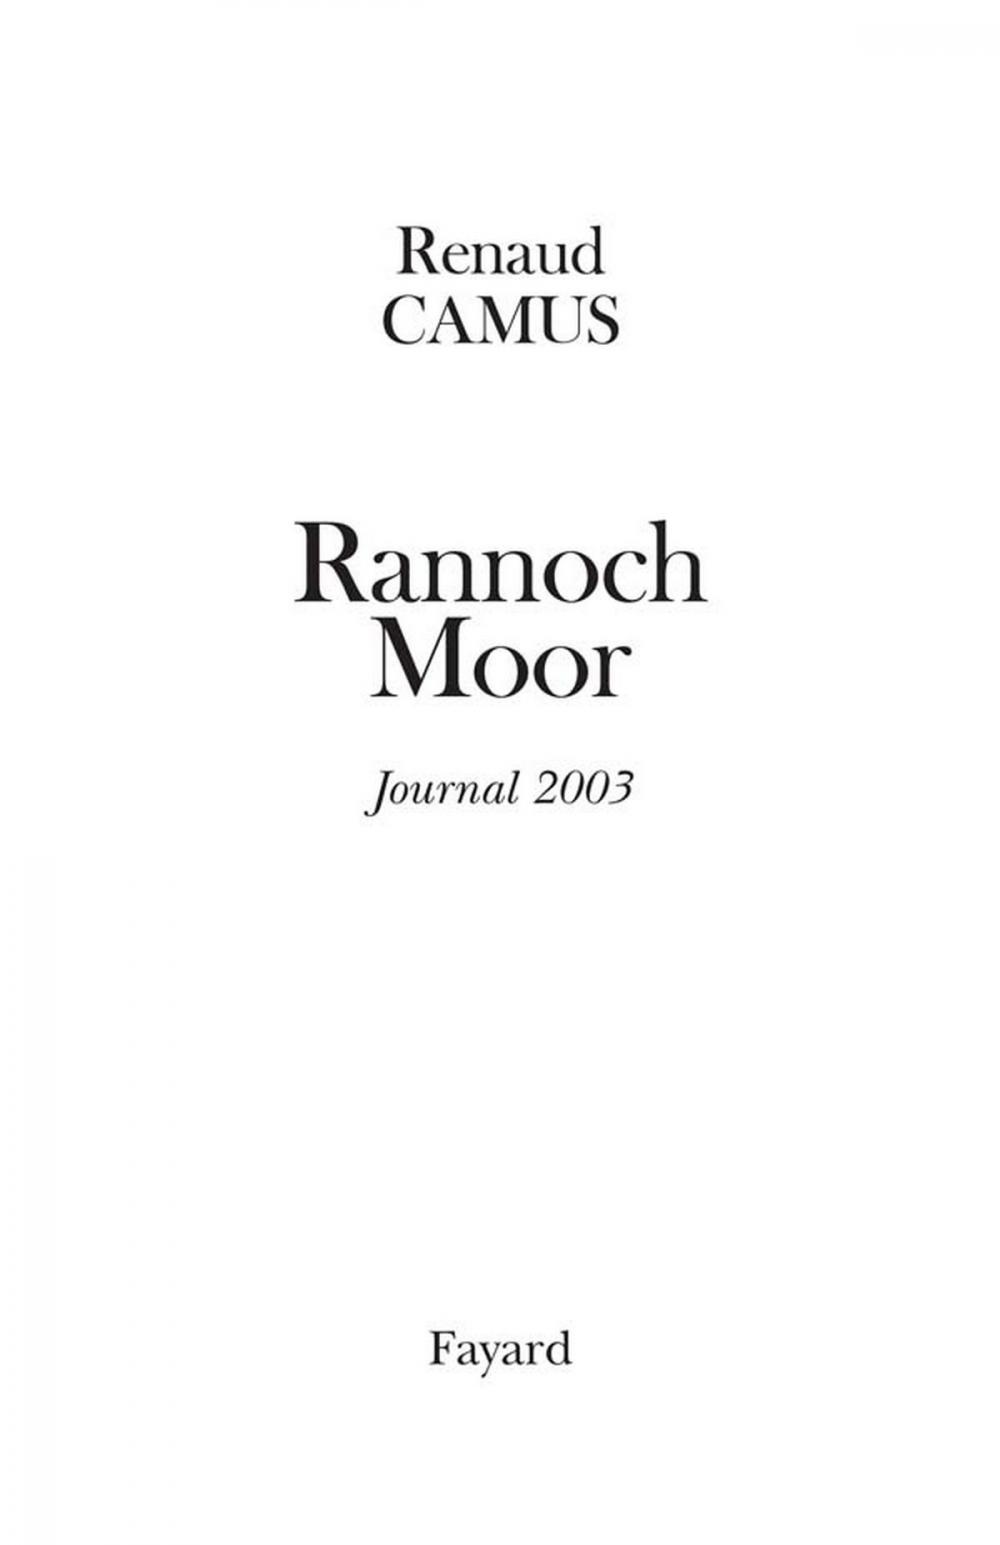 Big bigCover of Rannoch Moor